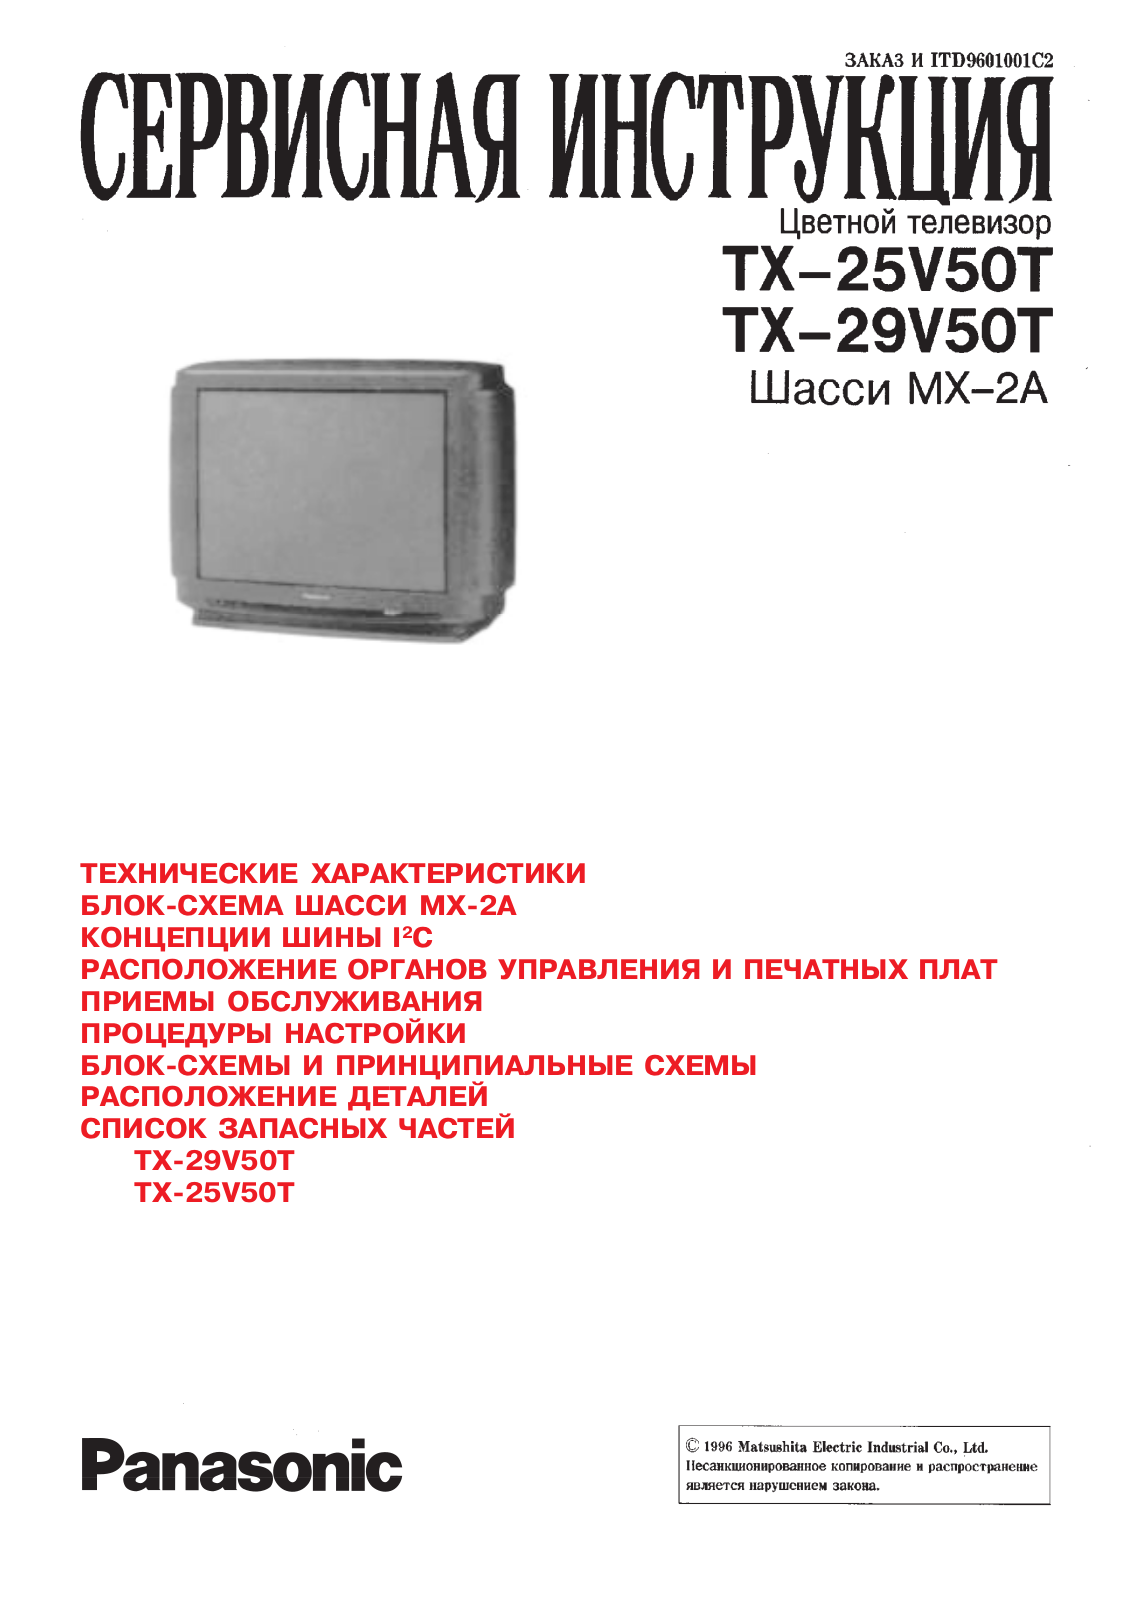 Panasonic TC-29V50T, TC-25V50T Schematic